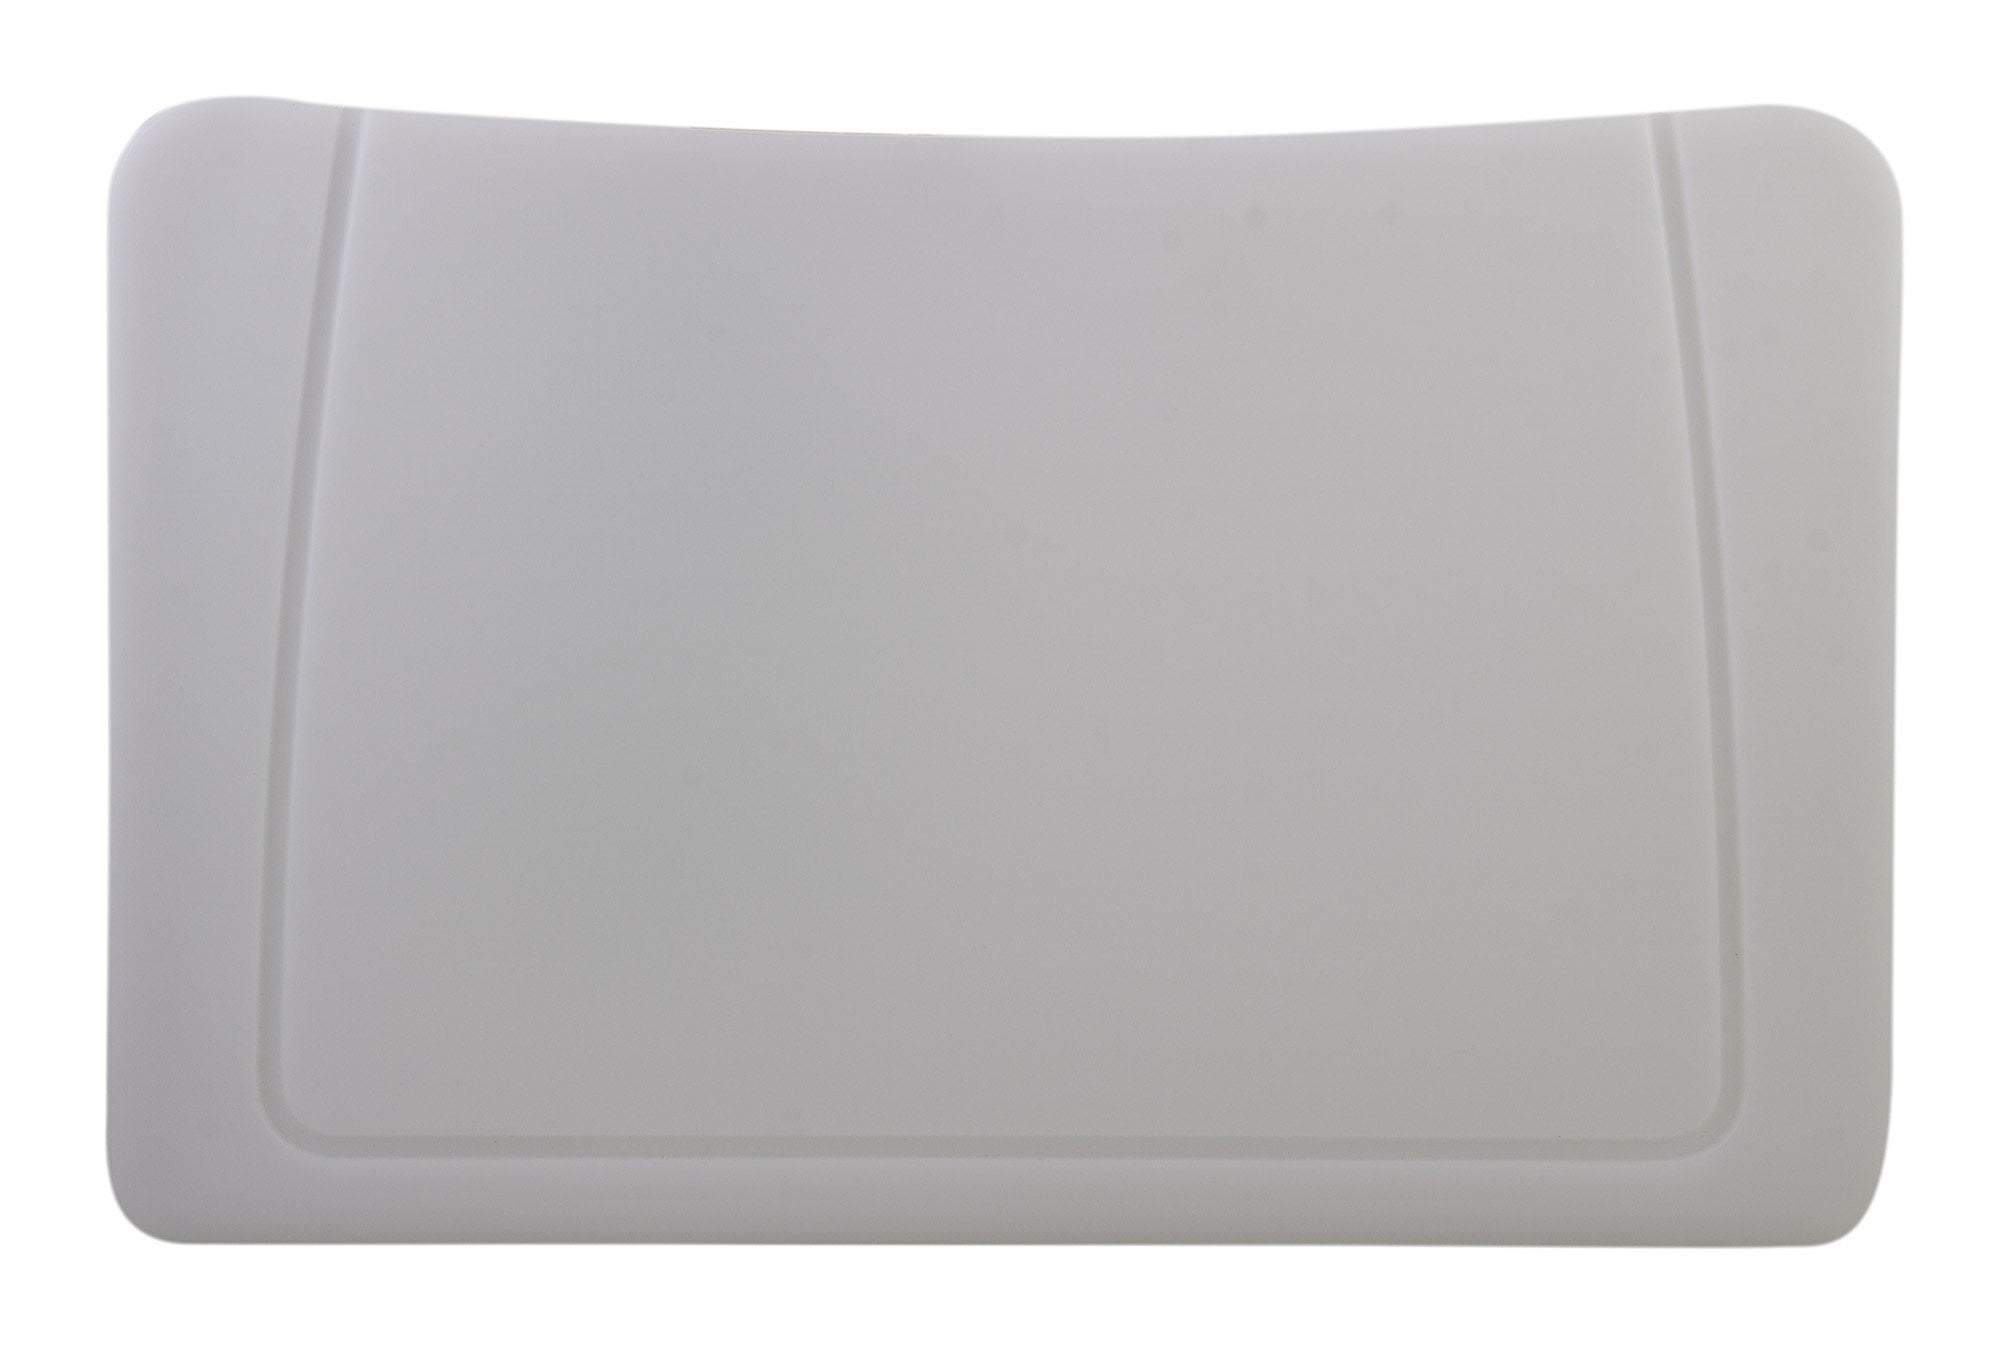 Rectangular Polyethylene Cutting Board for AB3220DI